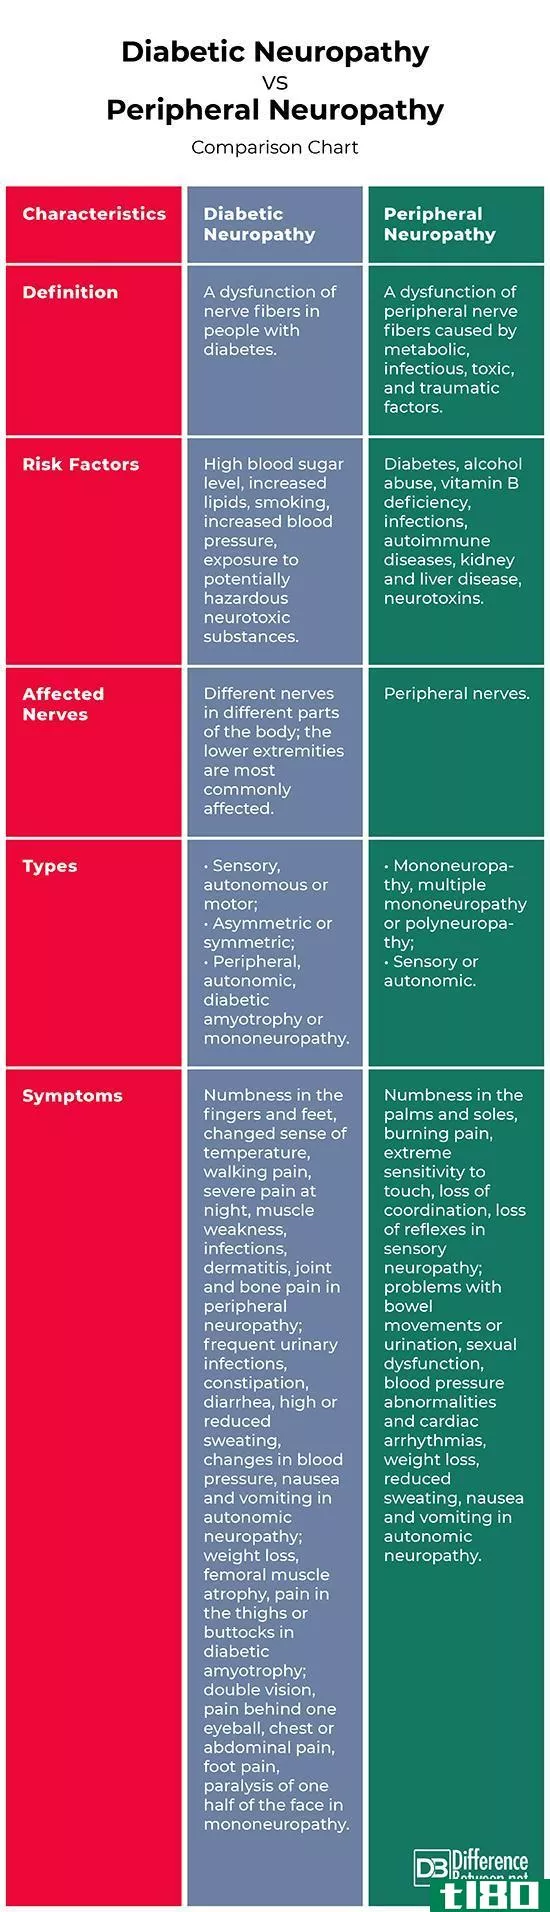 糖尿病神经病变(diabetic neuropathy)和周围神经病(peripheral neuropathy)的区别